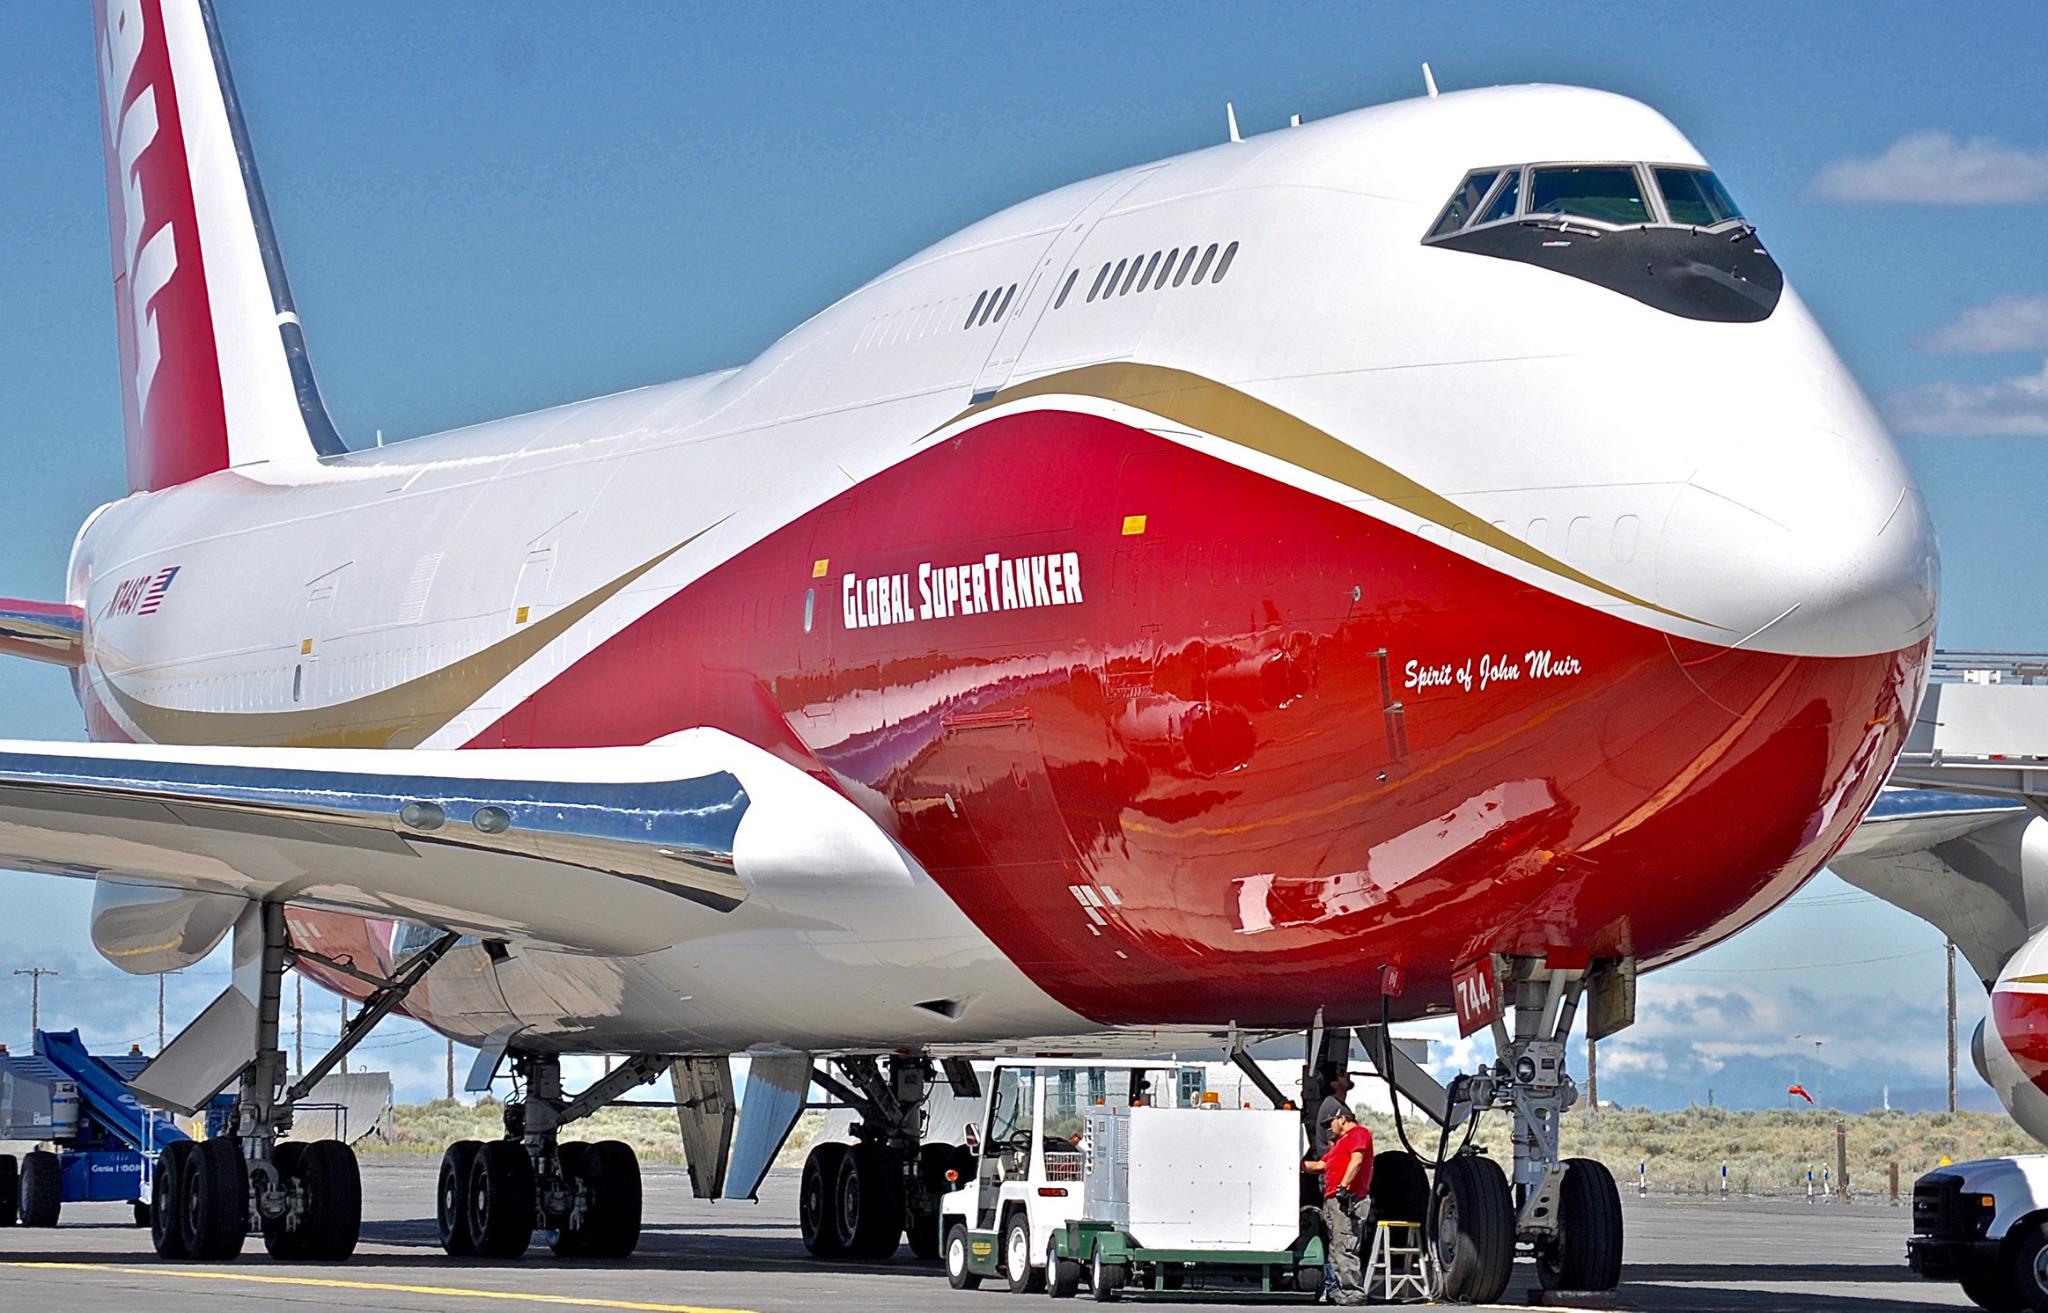 747 SuperTanker Arrives in Chile